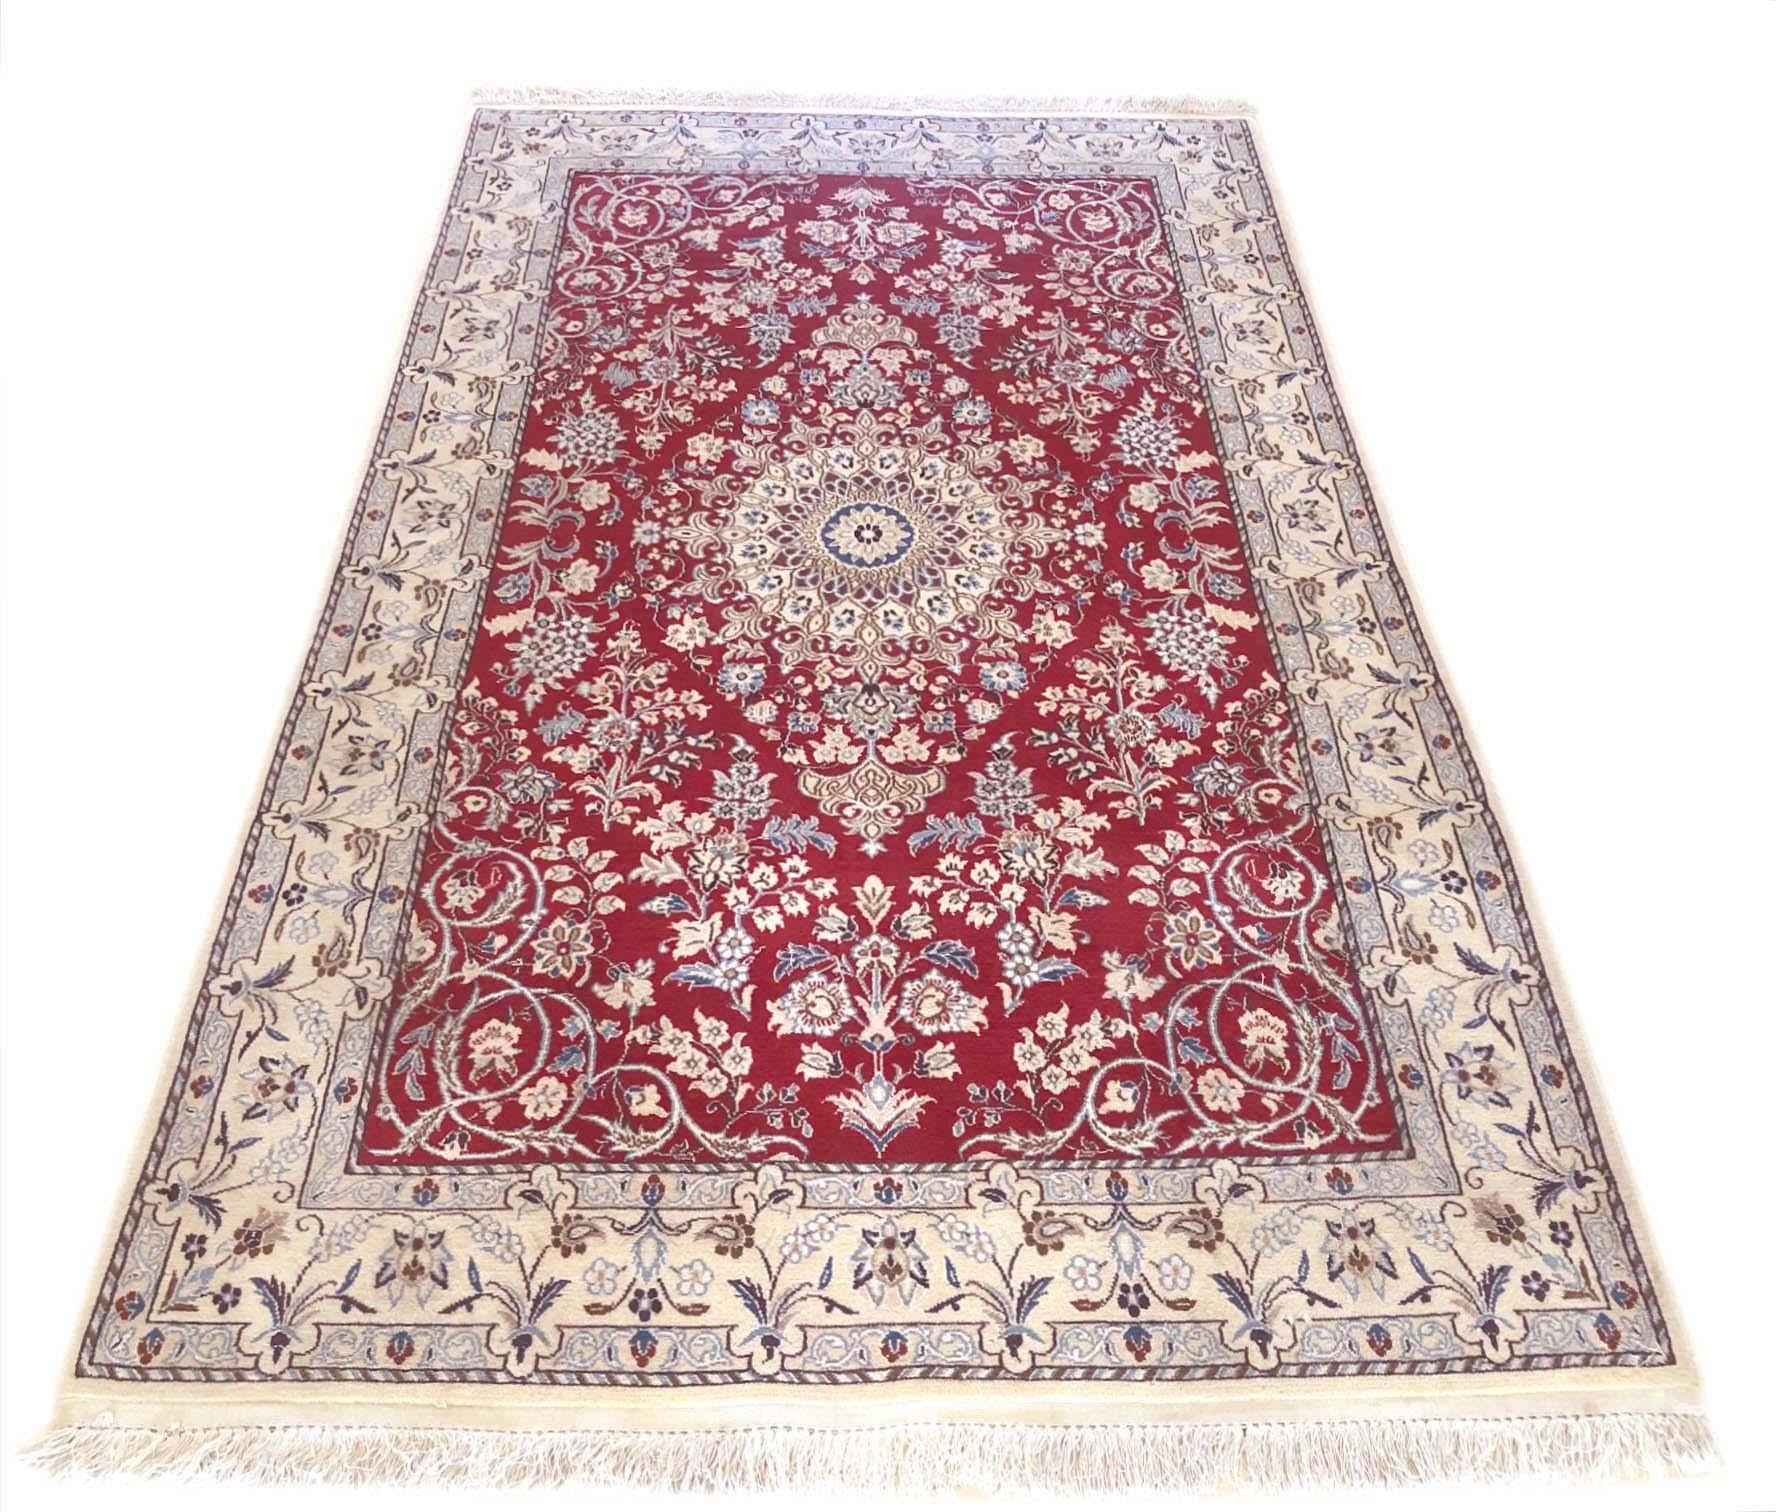 Dieser authentische persische handgefertigte Nain-Teppich hat einen Flor aus Wolle und Seide (9 LA) mit Baumwollgrund. Nain ist eine Stadt im Iran, die für die Herstellung feiner handgefertigter Teppiche bekannt ist. Nain-Teppiche haben ein hohes